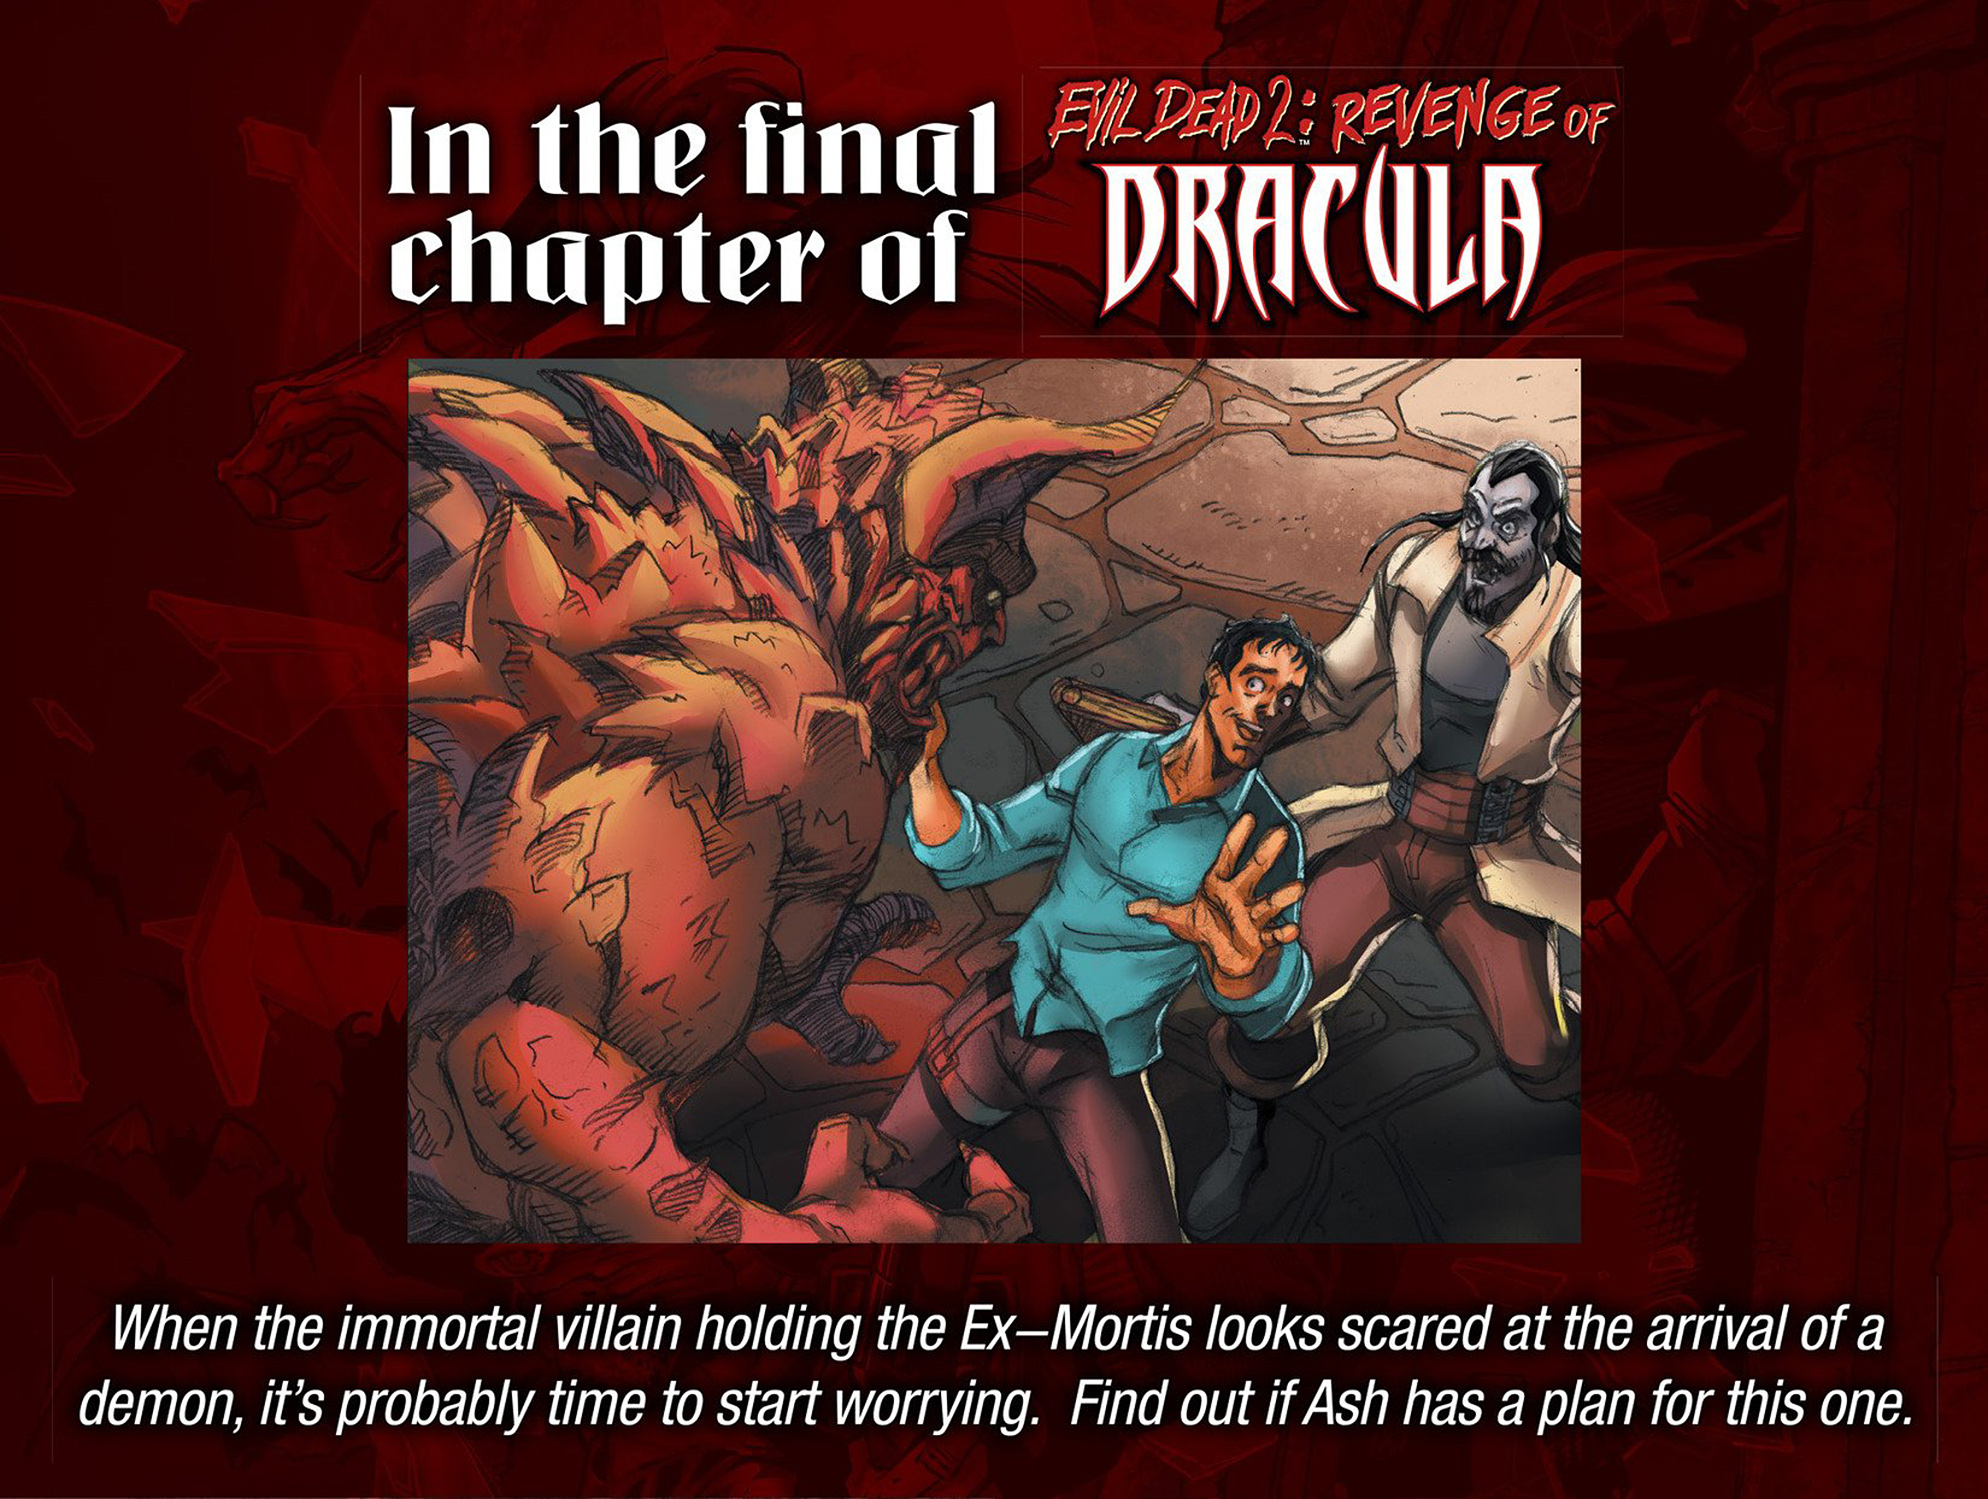 Read online Evil Dead 2: Revenge of Dracula comic -  Issue #1 - 23